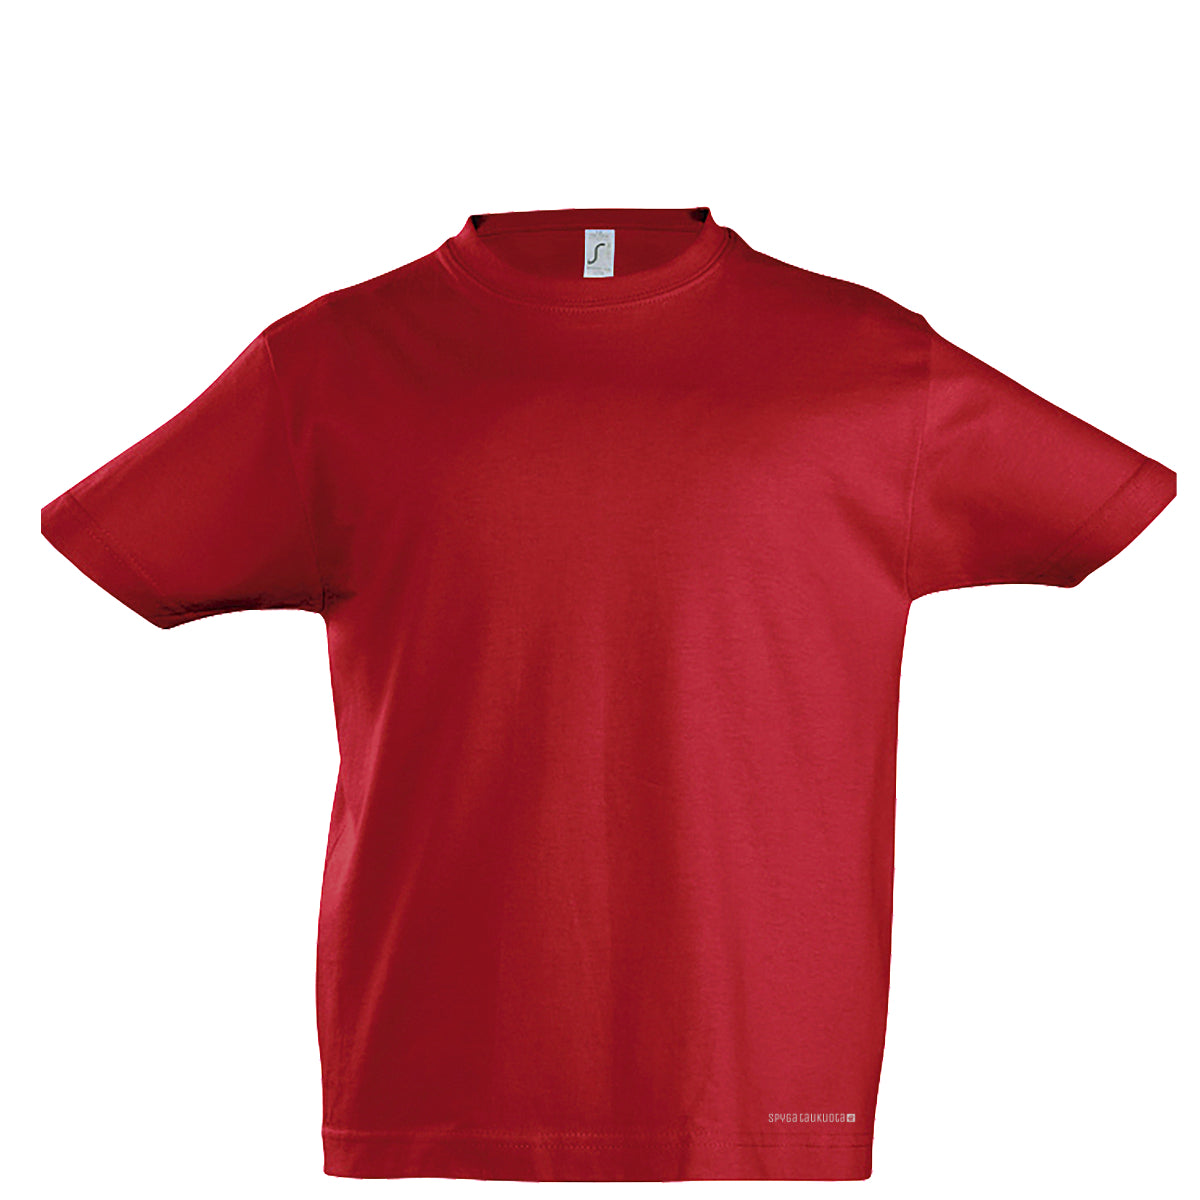 Raudoni vaikiški marškinėliai be spaudos